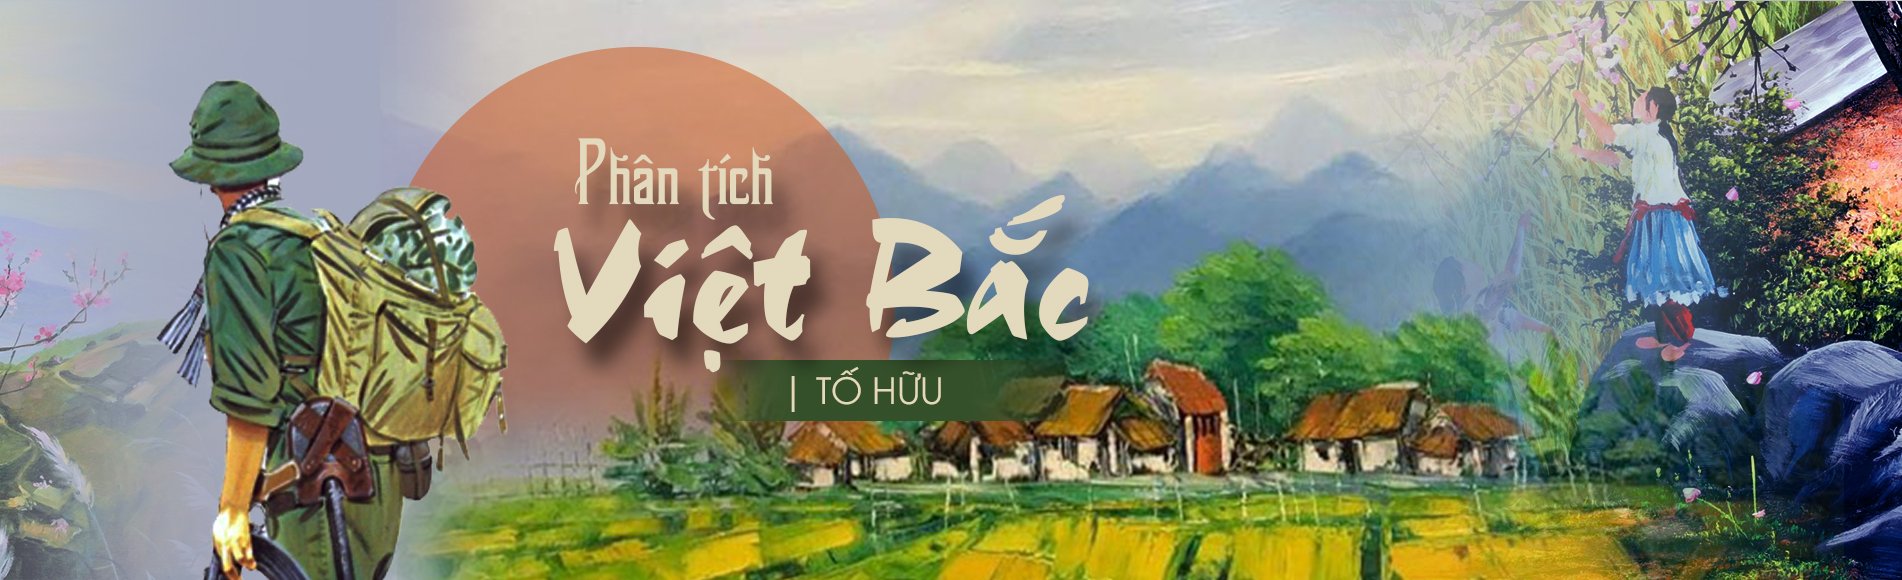 Với Phân tích bài thơ Việt Bắc, bạn sẽ được khám phá những cung bậc cảm xúc sâu sắc và tuyệt vời của bài thơ đầy ý nghĩa này. Chắc chắn sẽ là một trải nghiệm tuyệt vời dành cho những ai yêu thích thơ ca.